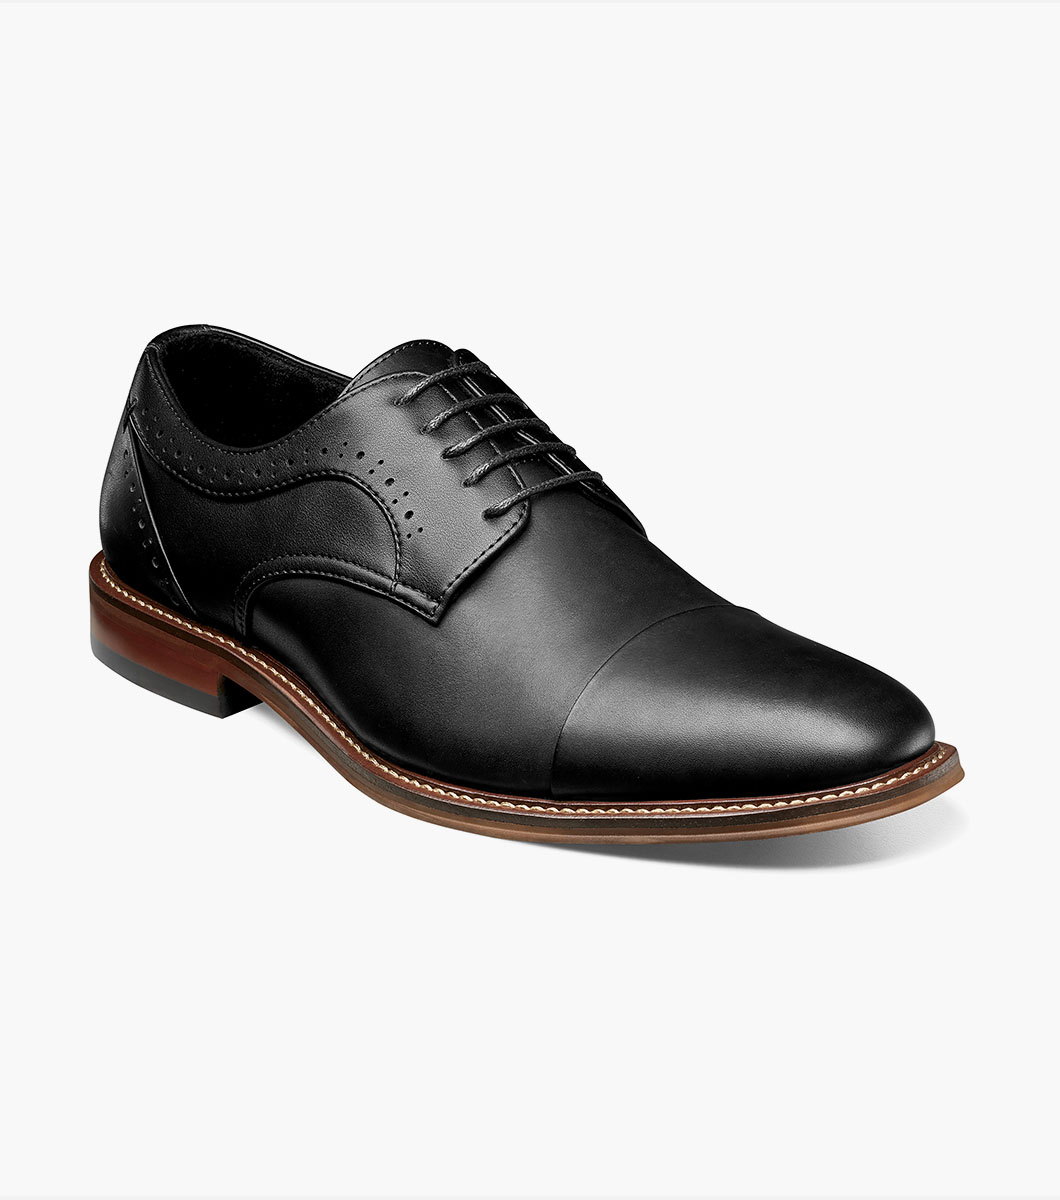 Maddox Cap Toe Oxford Men’s Dress Shoes | Stacyadams.com